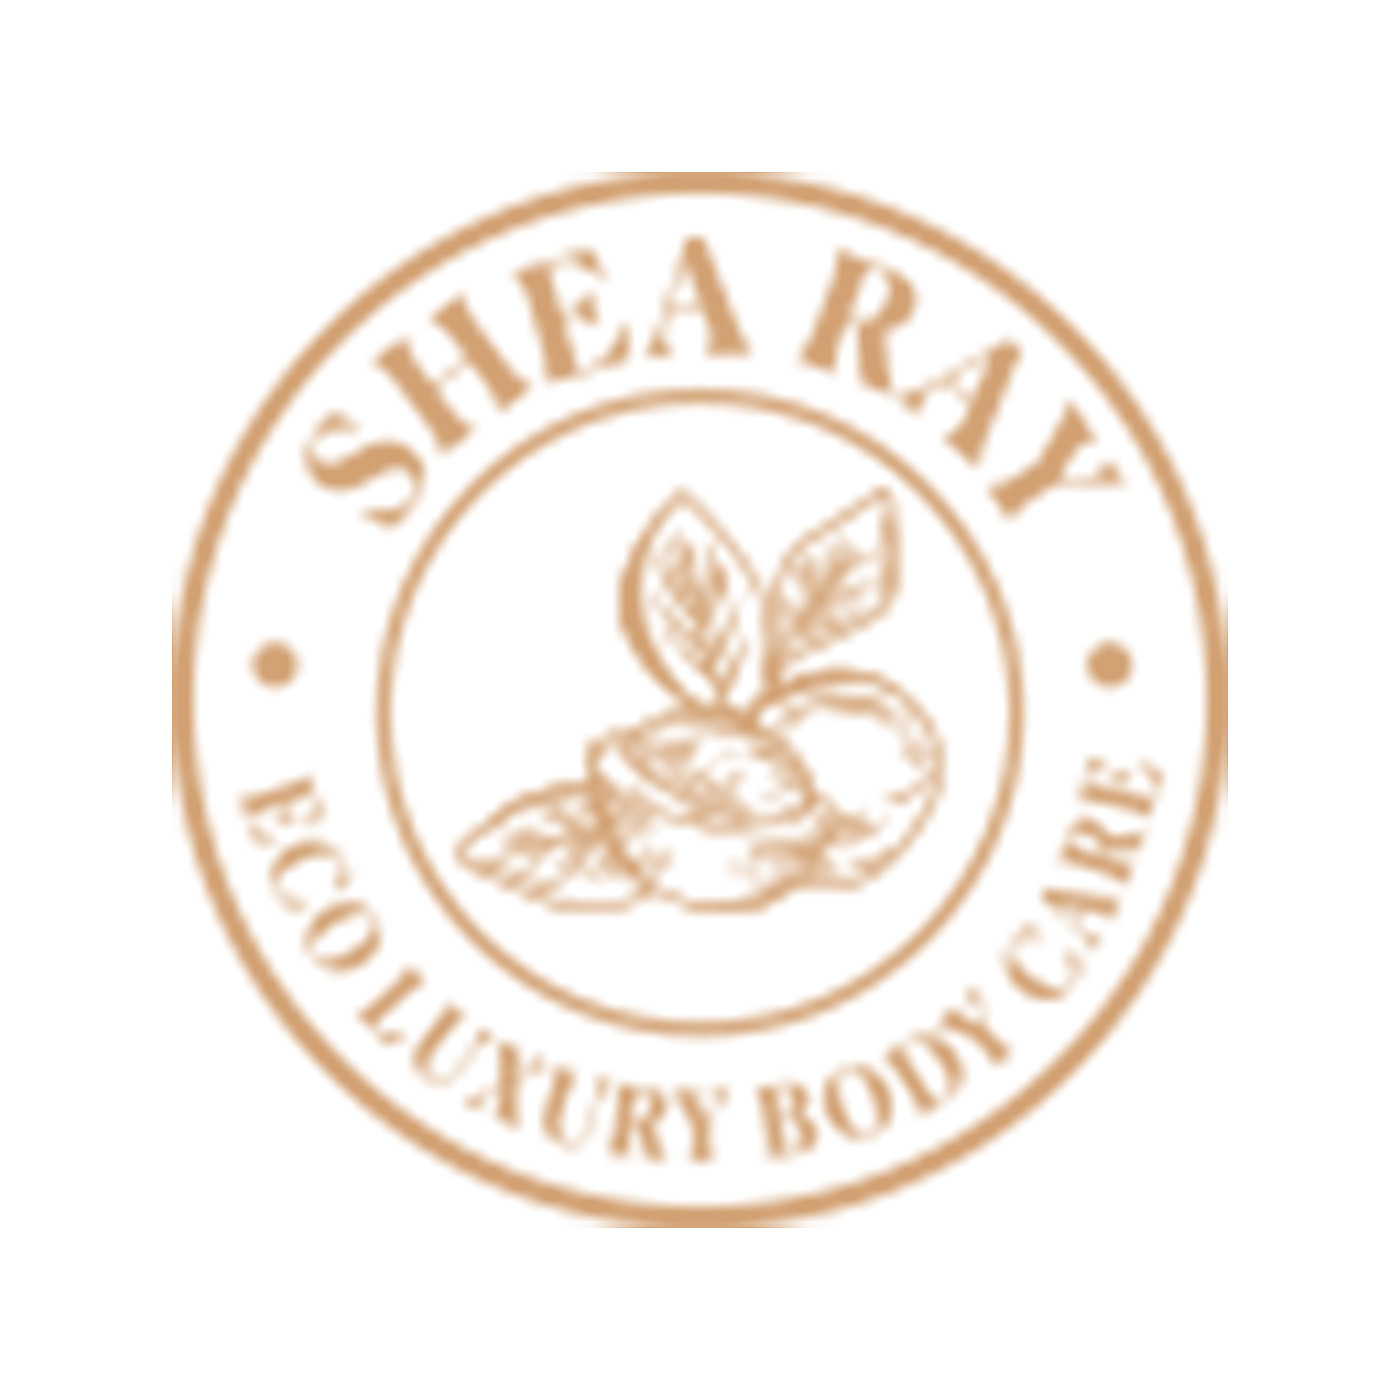 Shea Ray